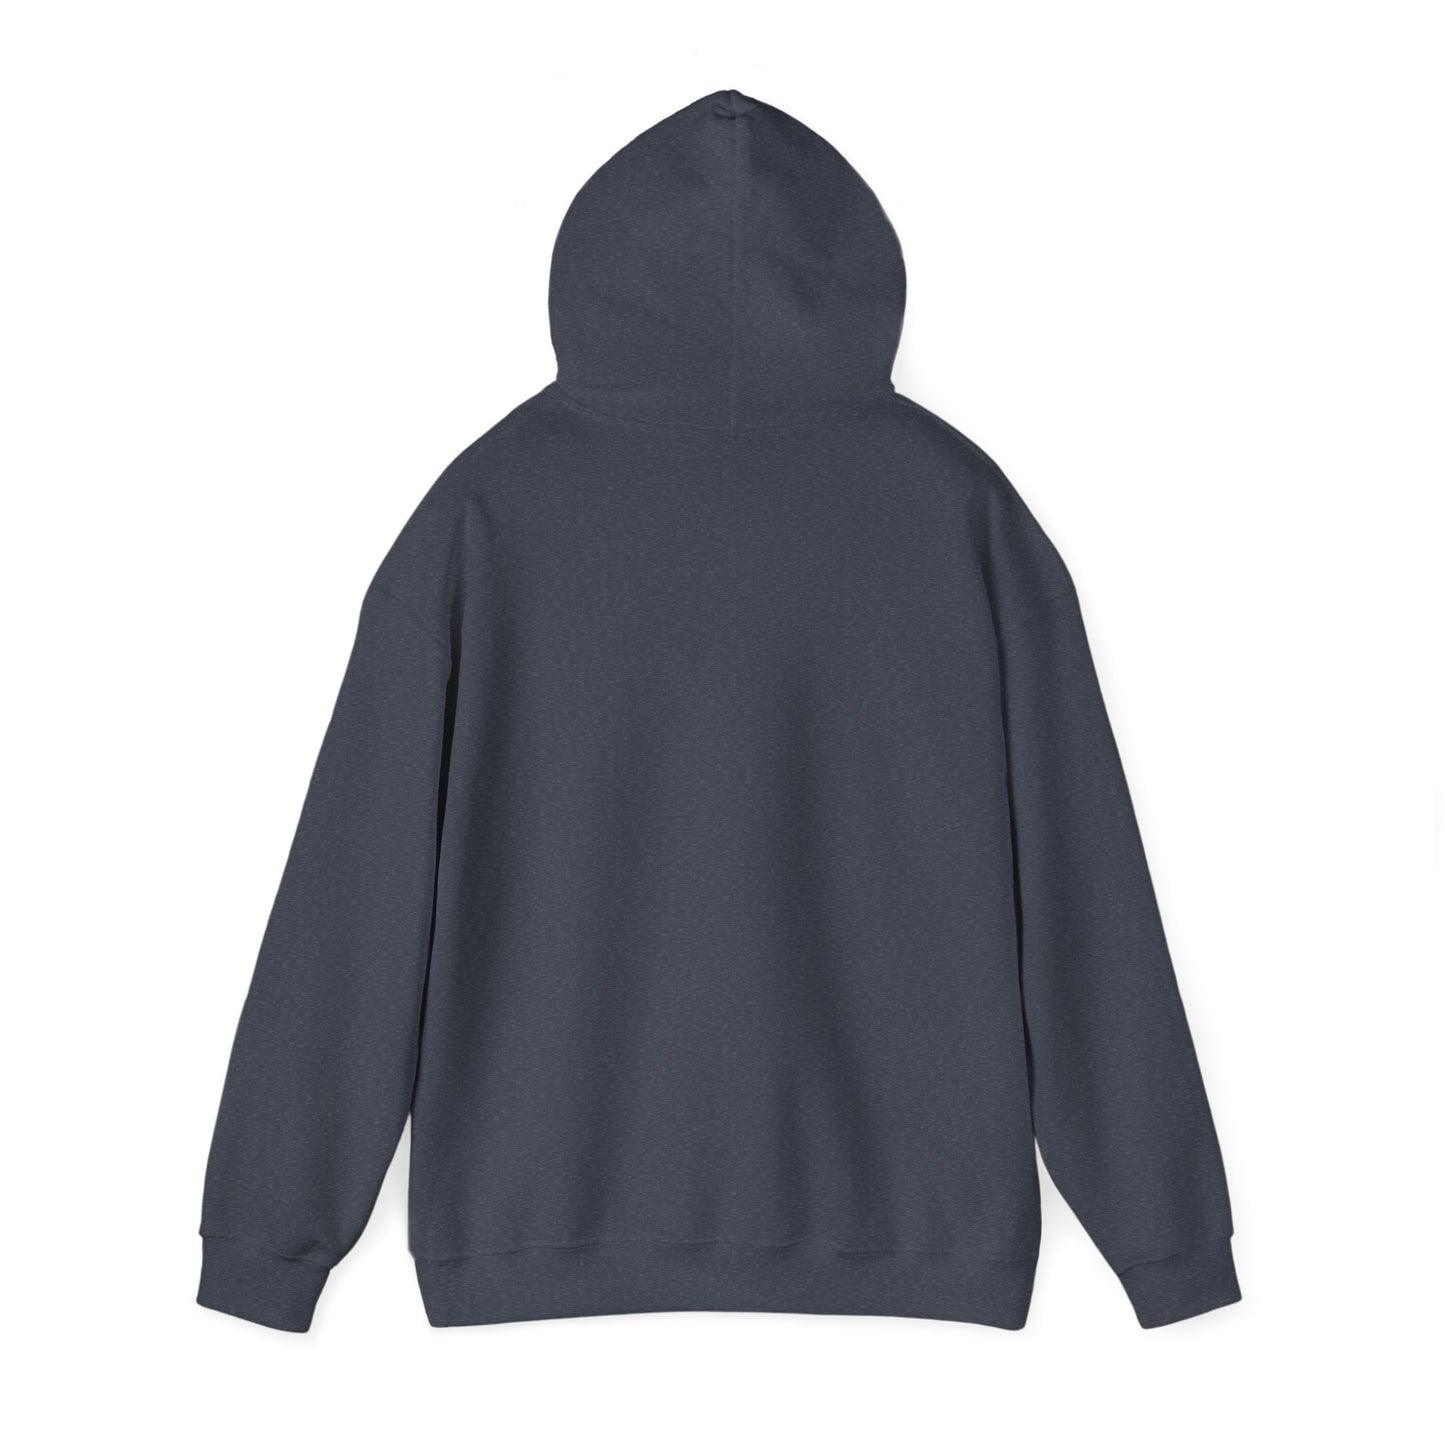 A Lot Can Happen Unisex Heavy Blend™ Hooded Sweatshirt